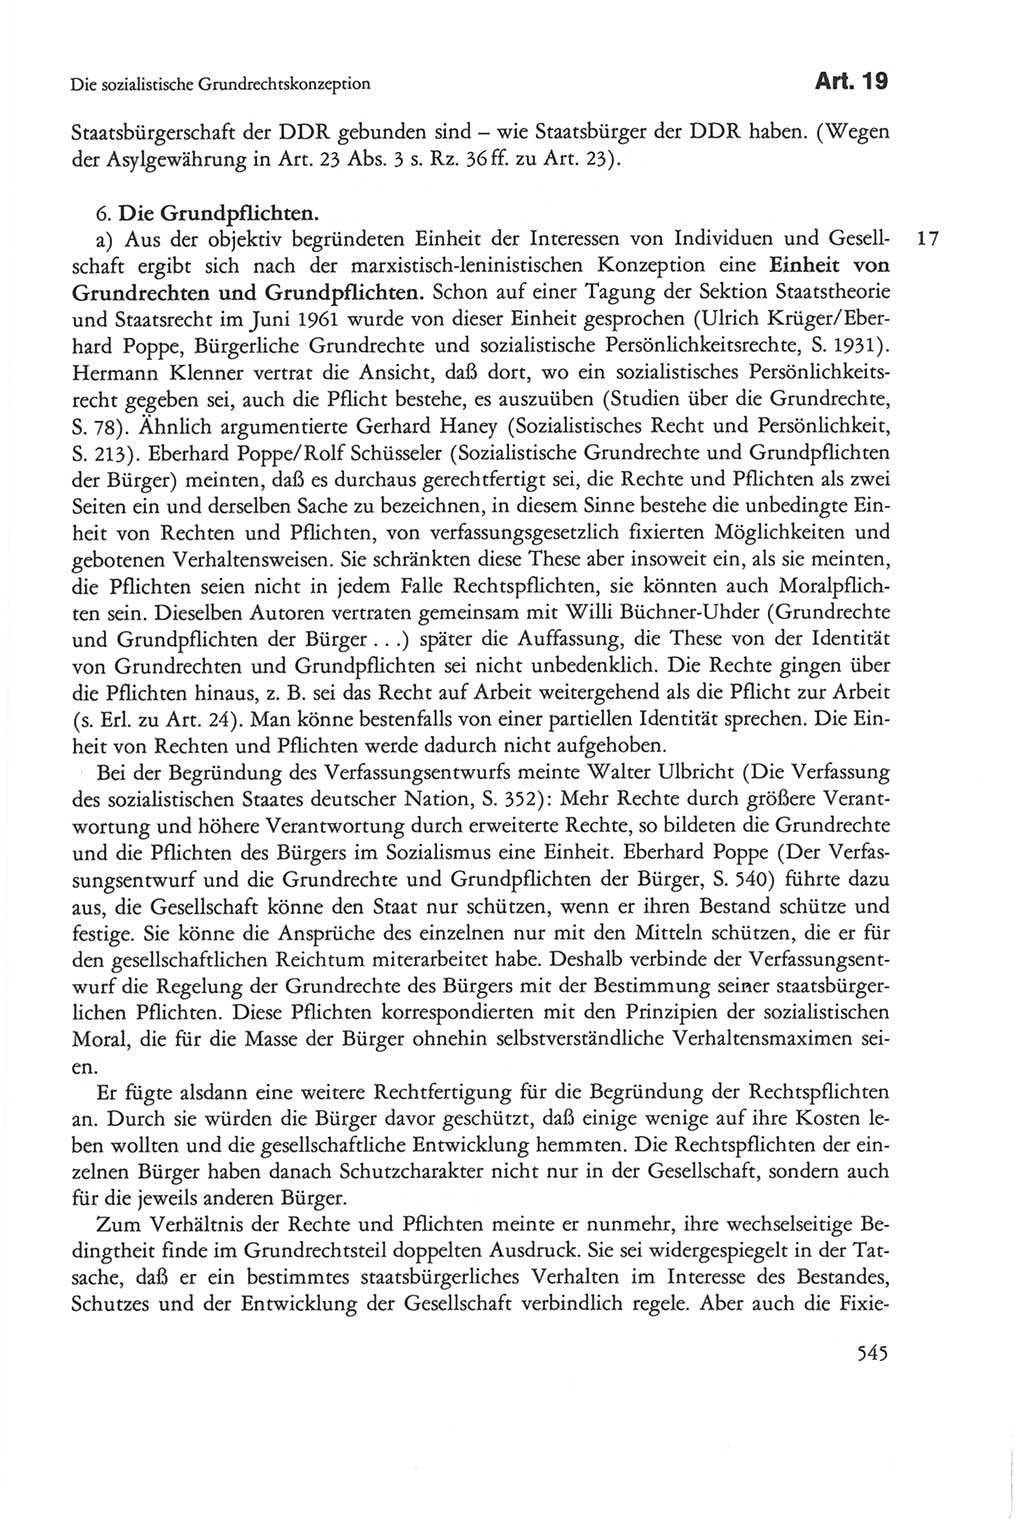 Die sozialistische Verfassung der Deutschen Demokratischen Republik (DDR), Kommentar 1982, Seite 545 (Soz. Verf. DDR Komm. 1982, S. 545)